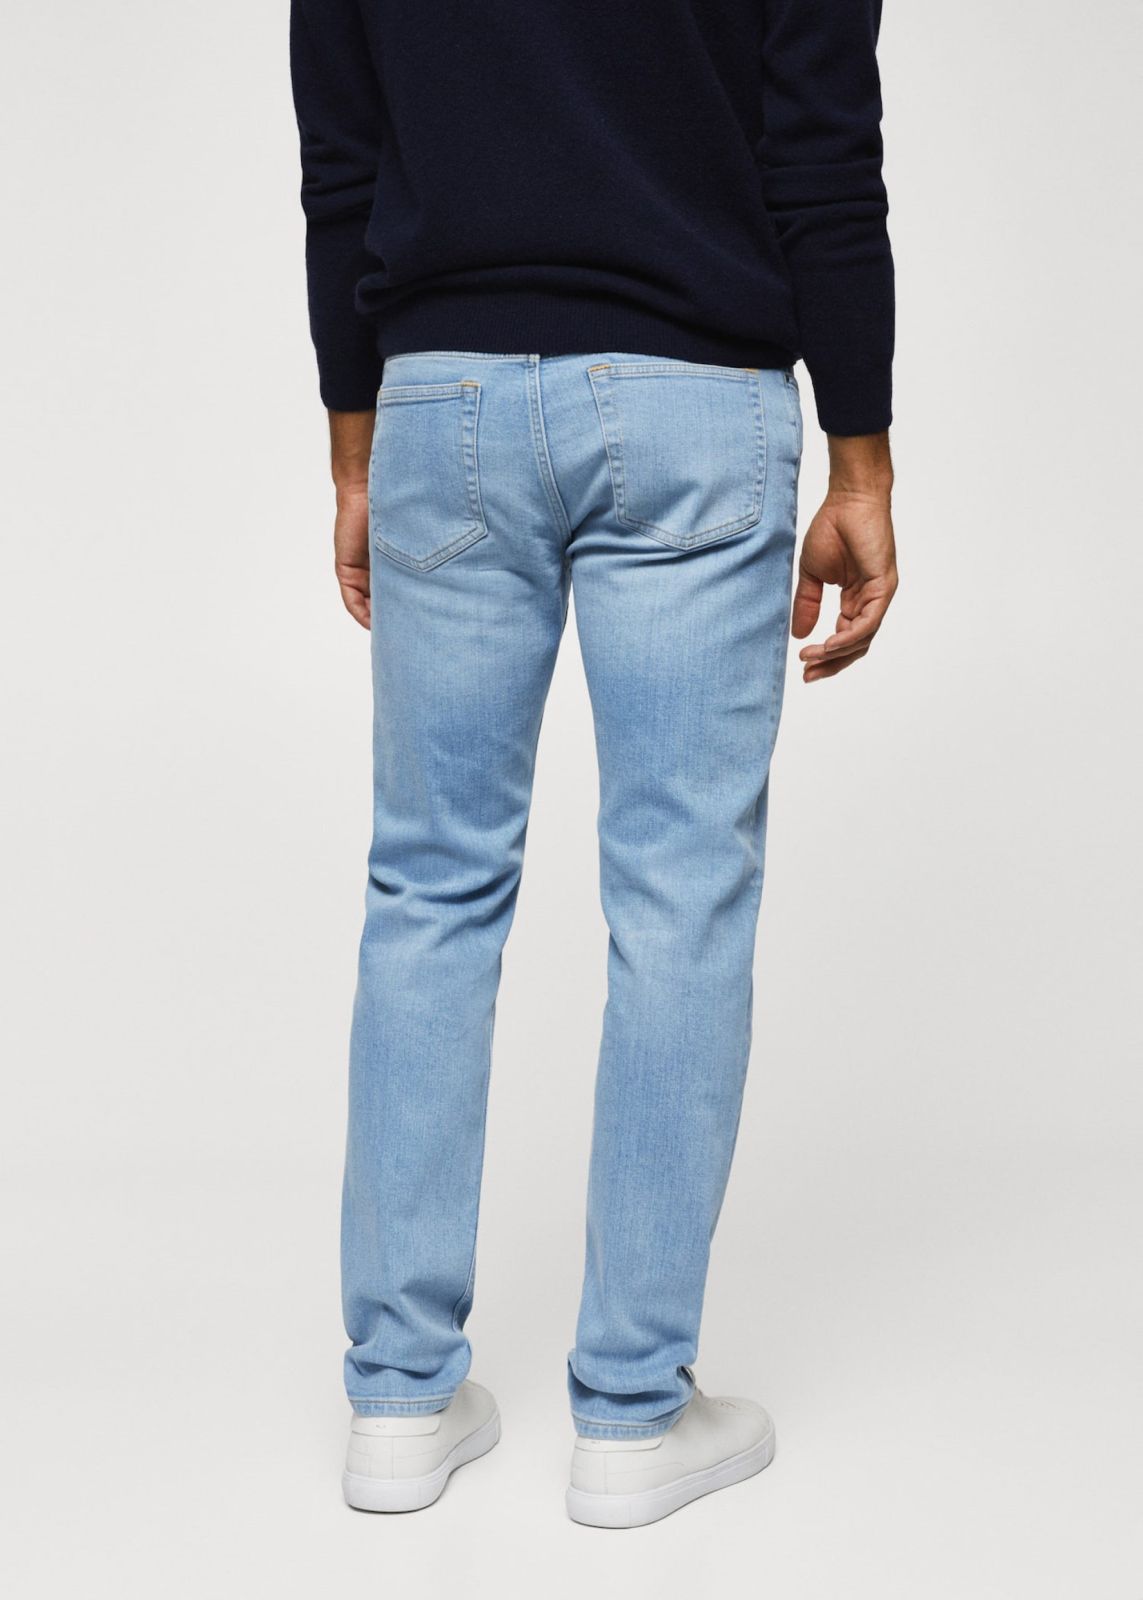  מכנסי ג'ינס ארוכים בגזרת slim של MANGO